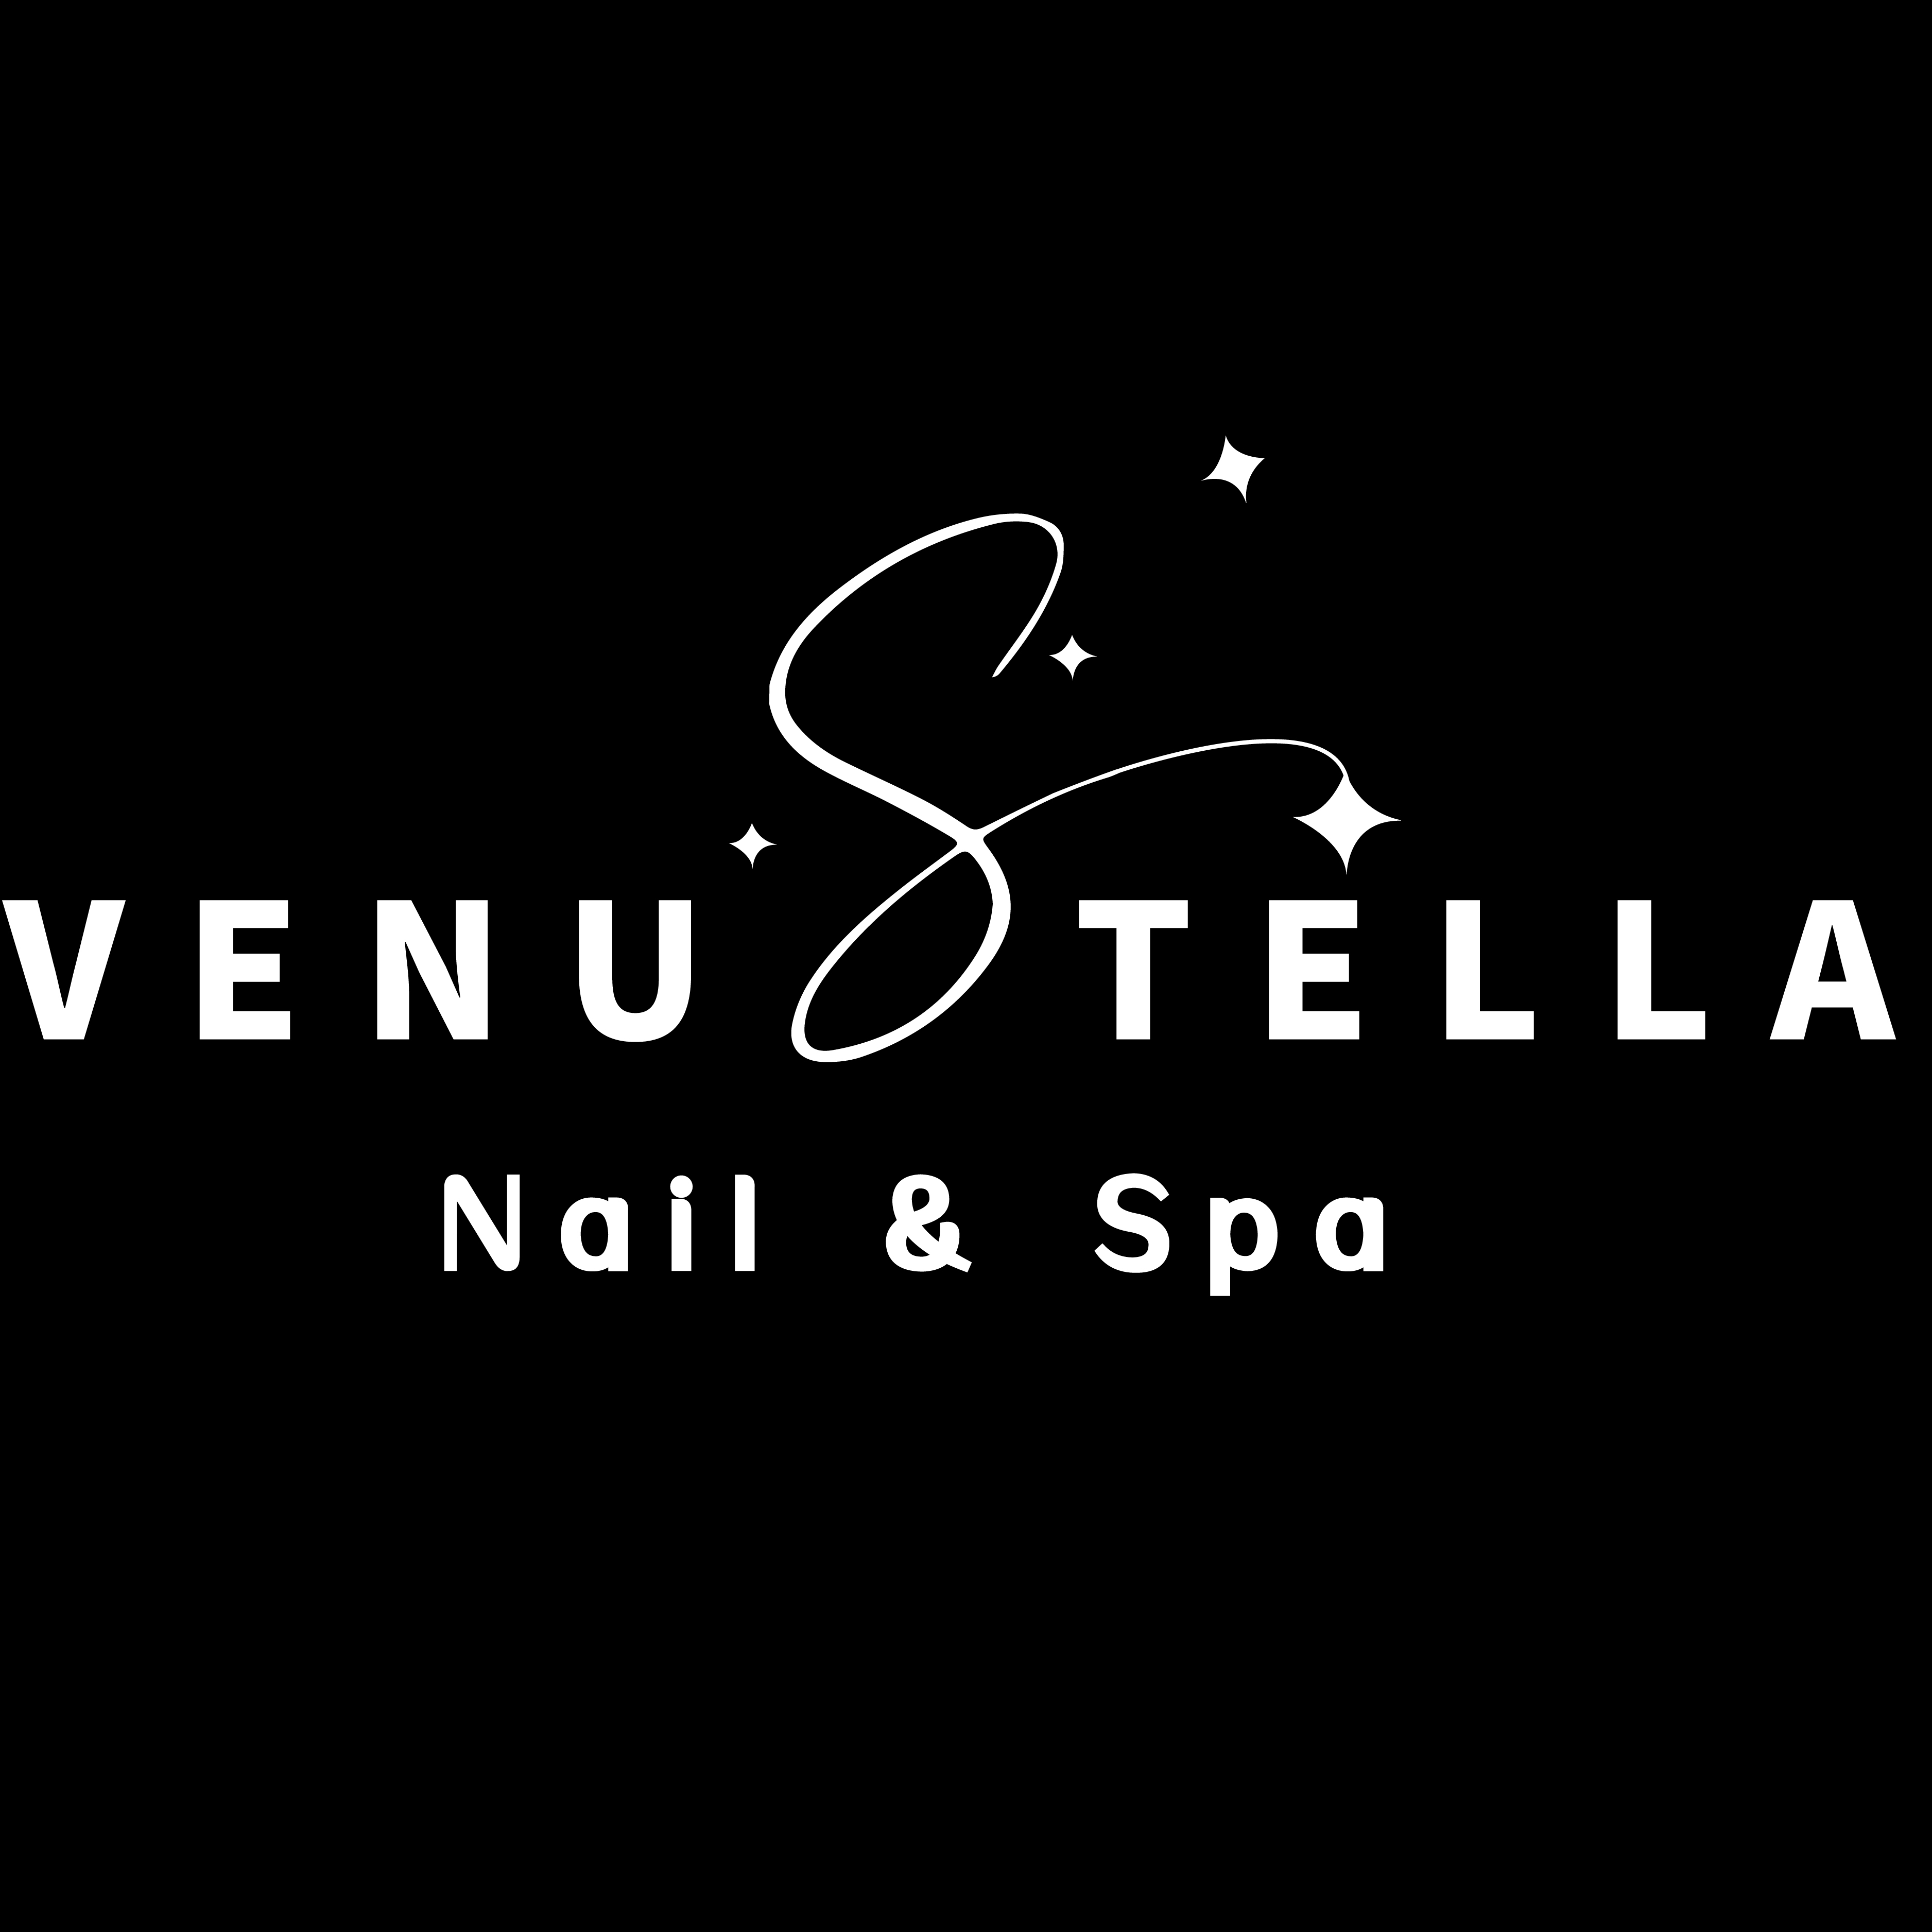 Venustella Nail &Spa logo